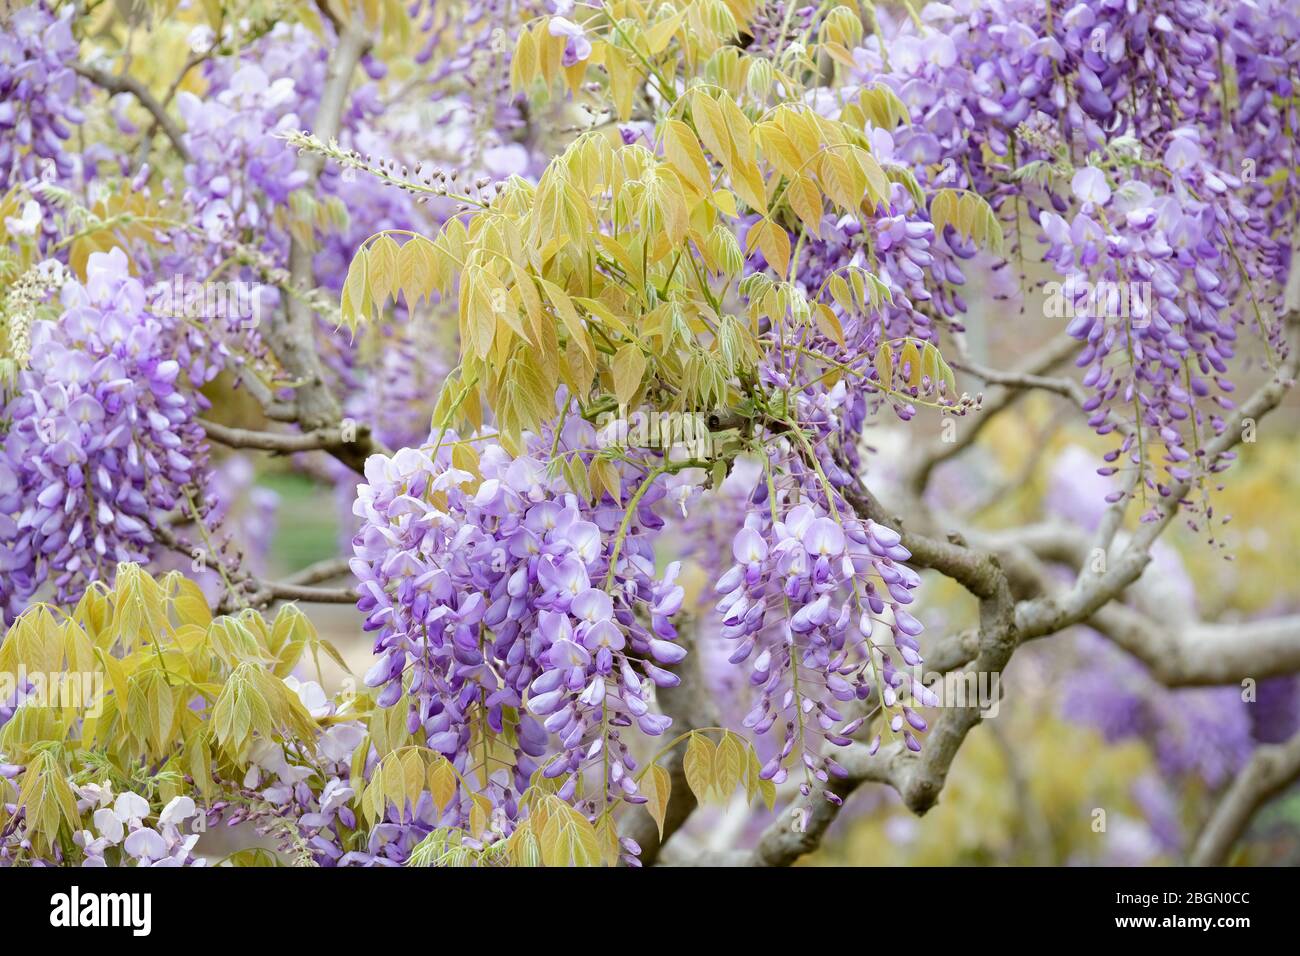 Racimos colgantes de flores aromáticas, arvejas, azuladas-lilas de Wisteria sinensis wisteria Fotografía de - Alamy